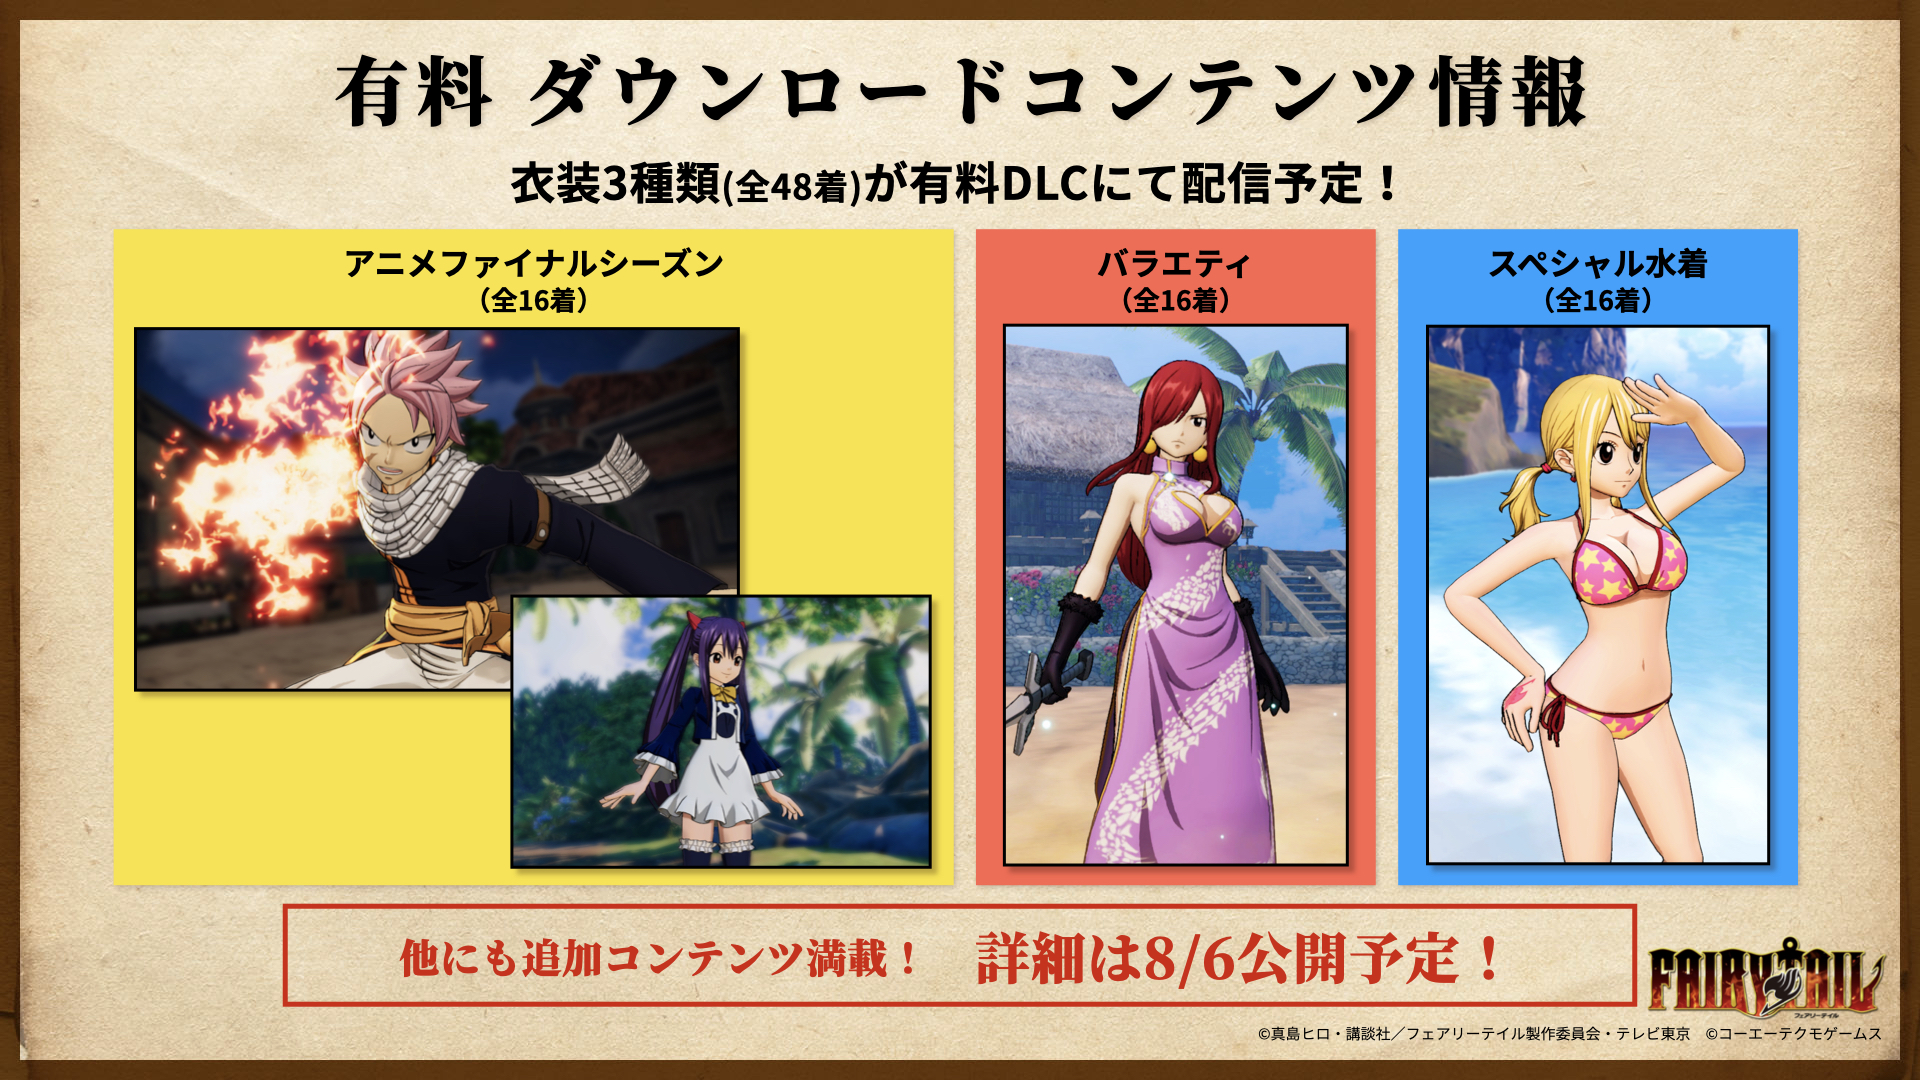 Fairy Tail gameplay featuring voice actors Katsuyuki Konishi and Sayaka  Ohara - Gematsu